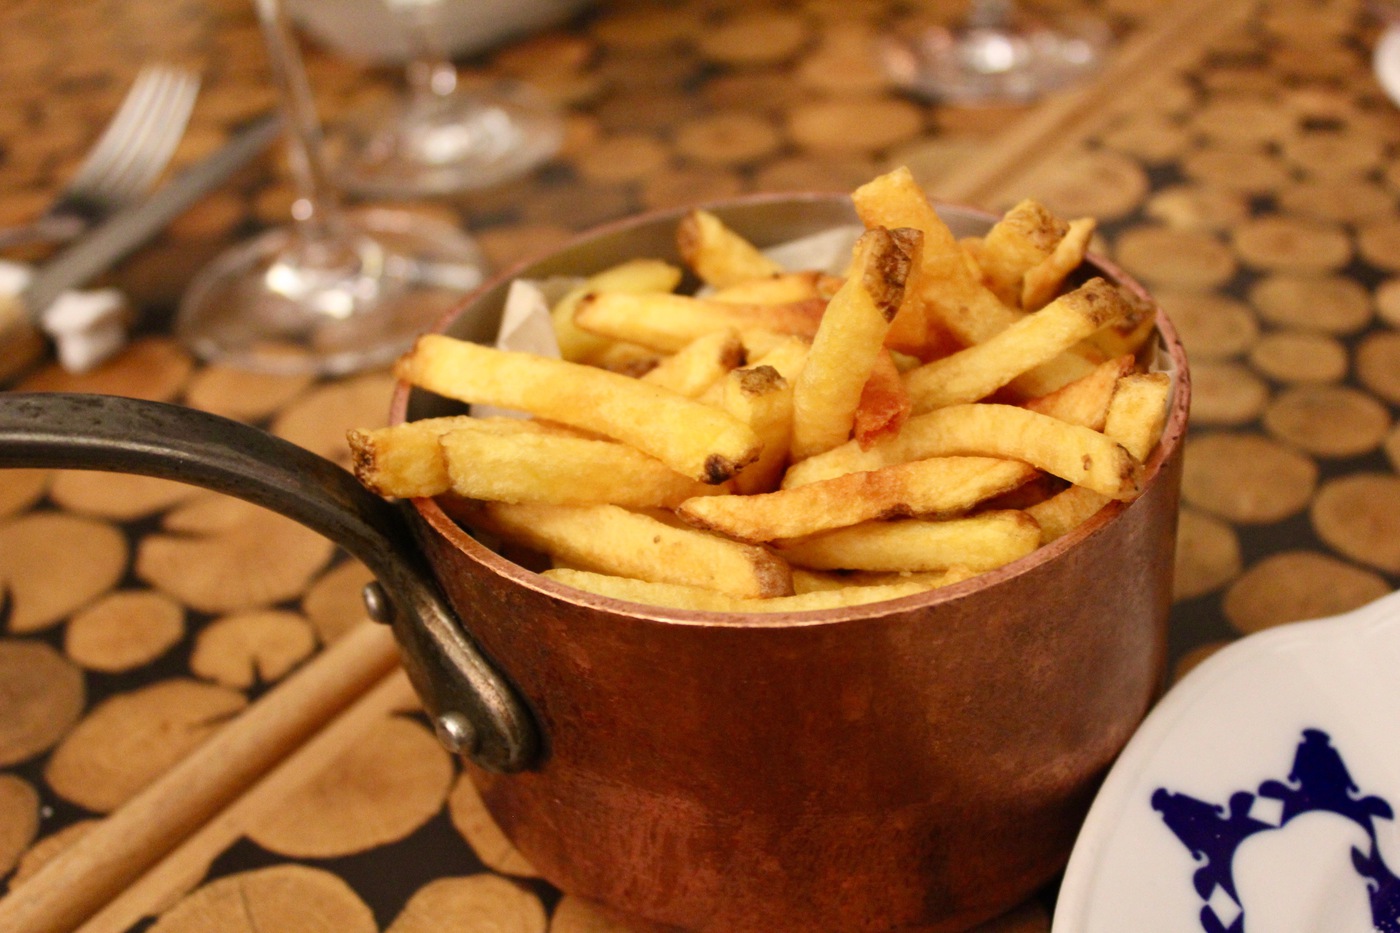 Side of fries in a copper pot at Cestr in Prague, Czech Republic